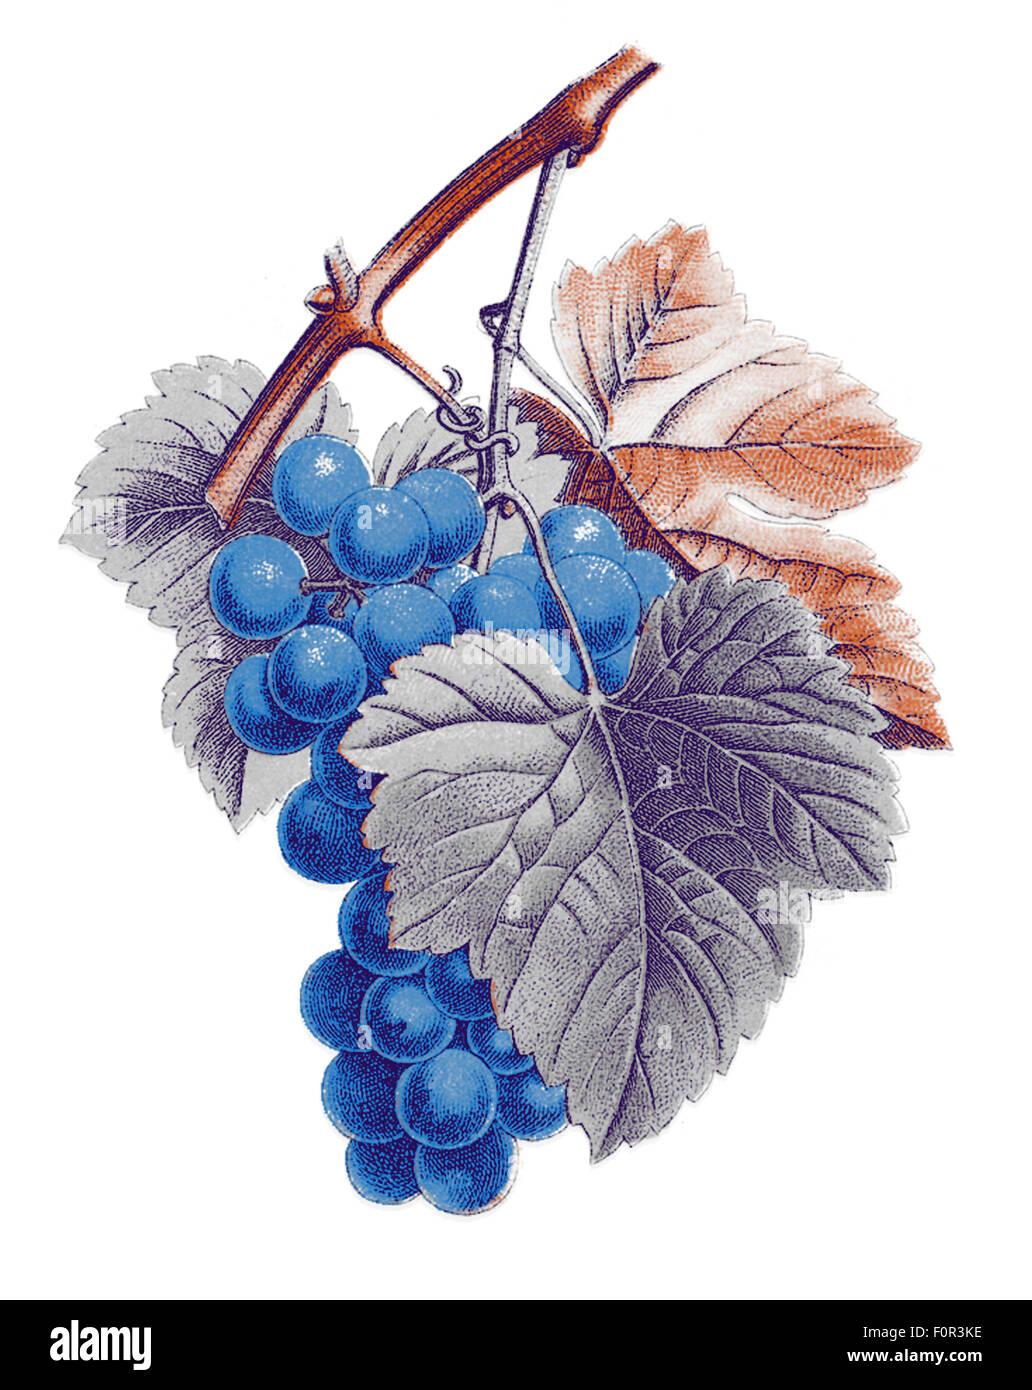 Illustration numérique basé sur un ancien modèle de botanique (vitis vinifera) et traités que la lithographie en 4 couleurs Banque D'Images